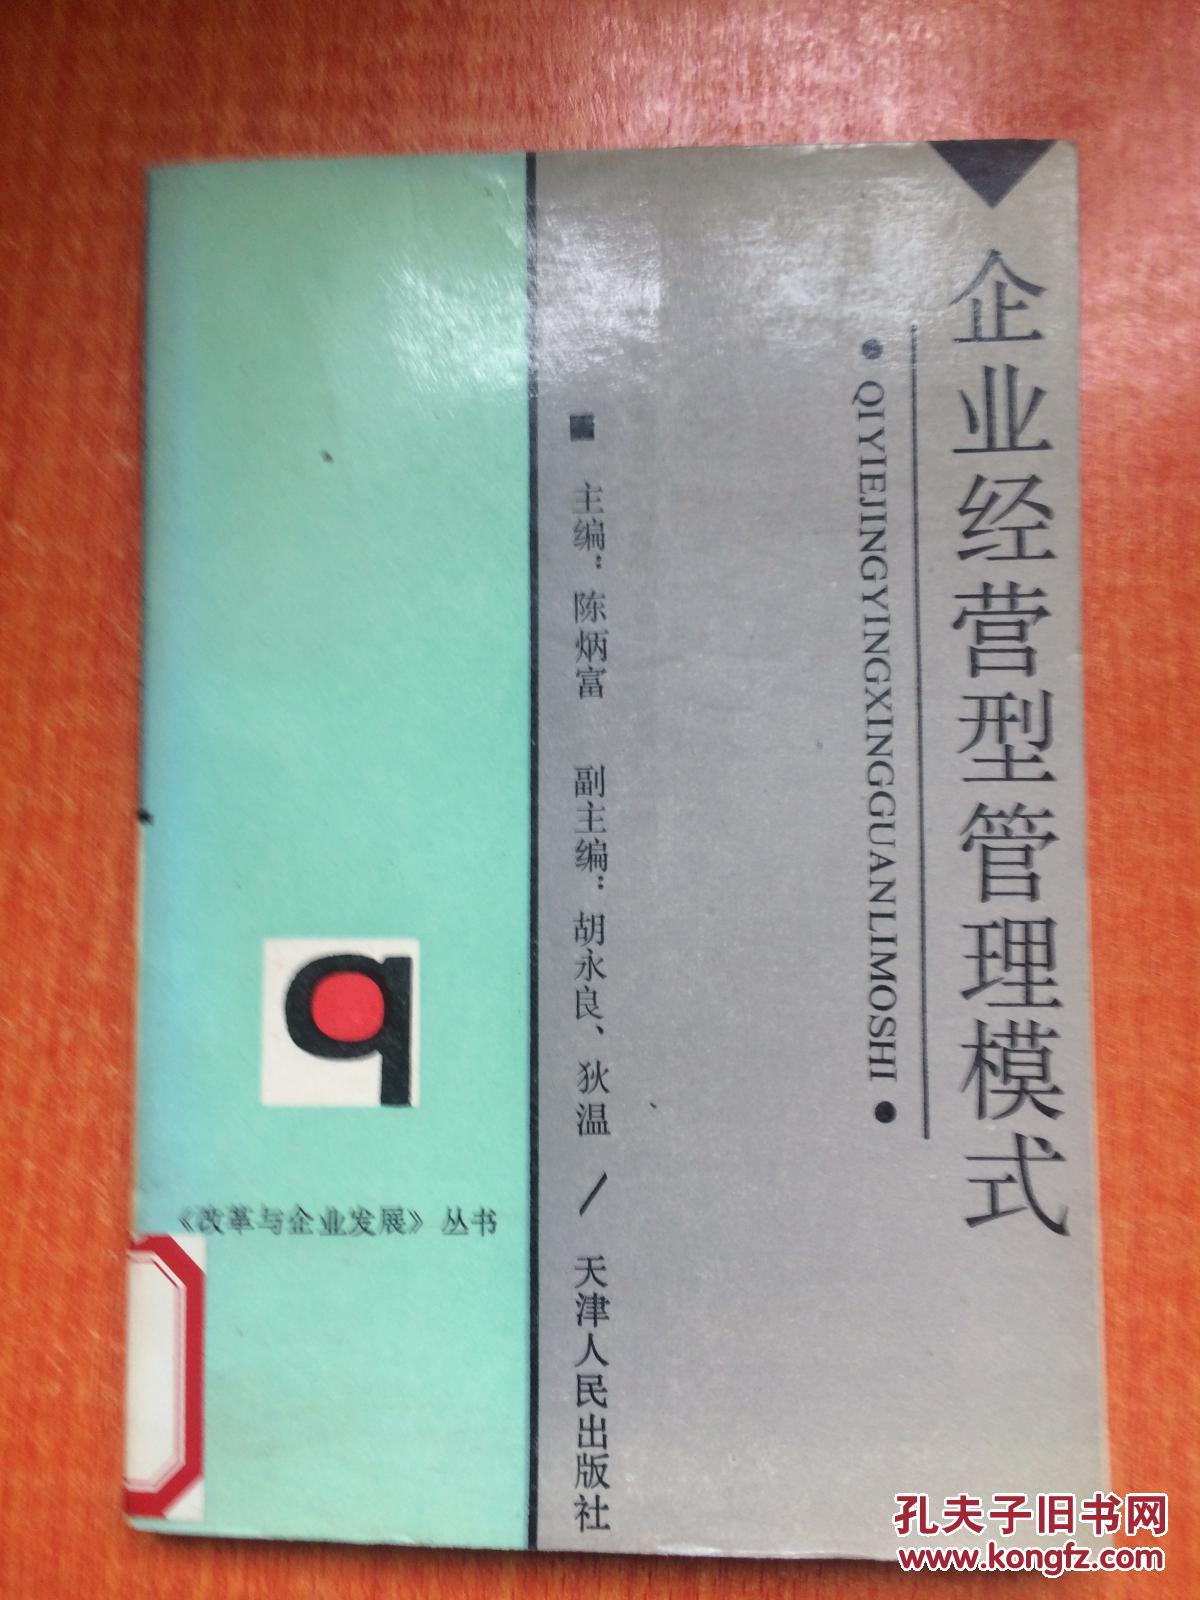 92年天津人民出版社一版一印《企业经营型管理模式》D8